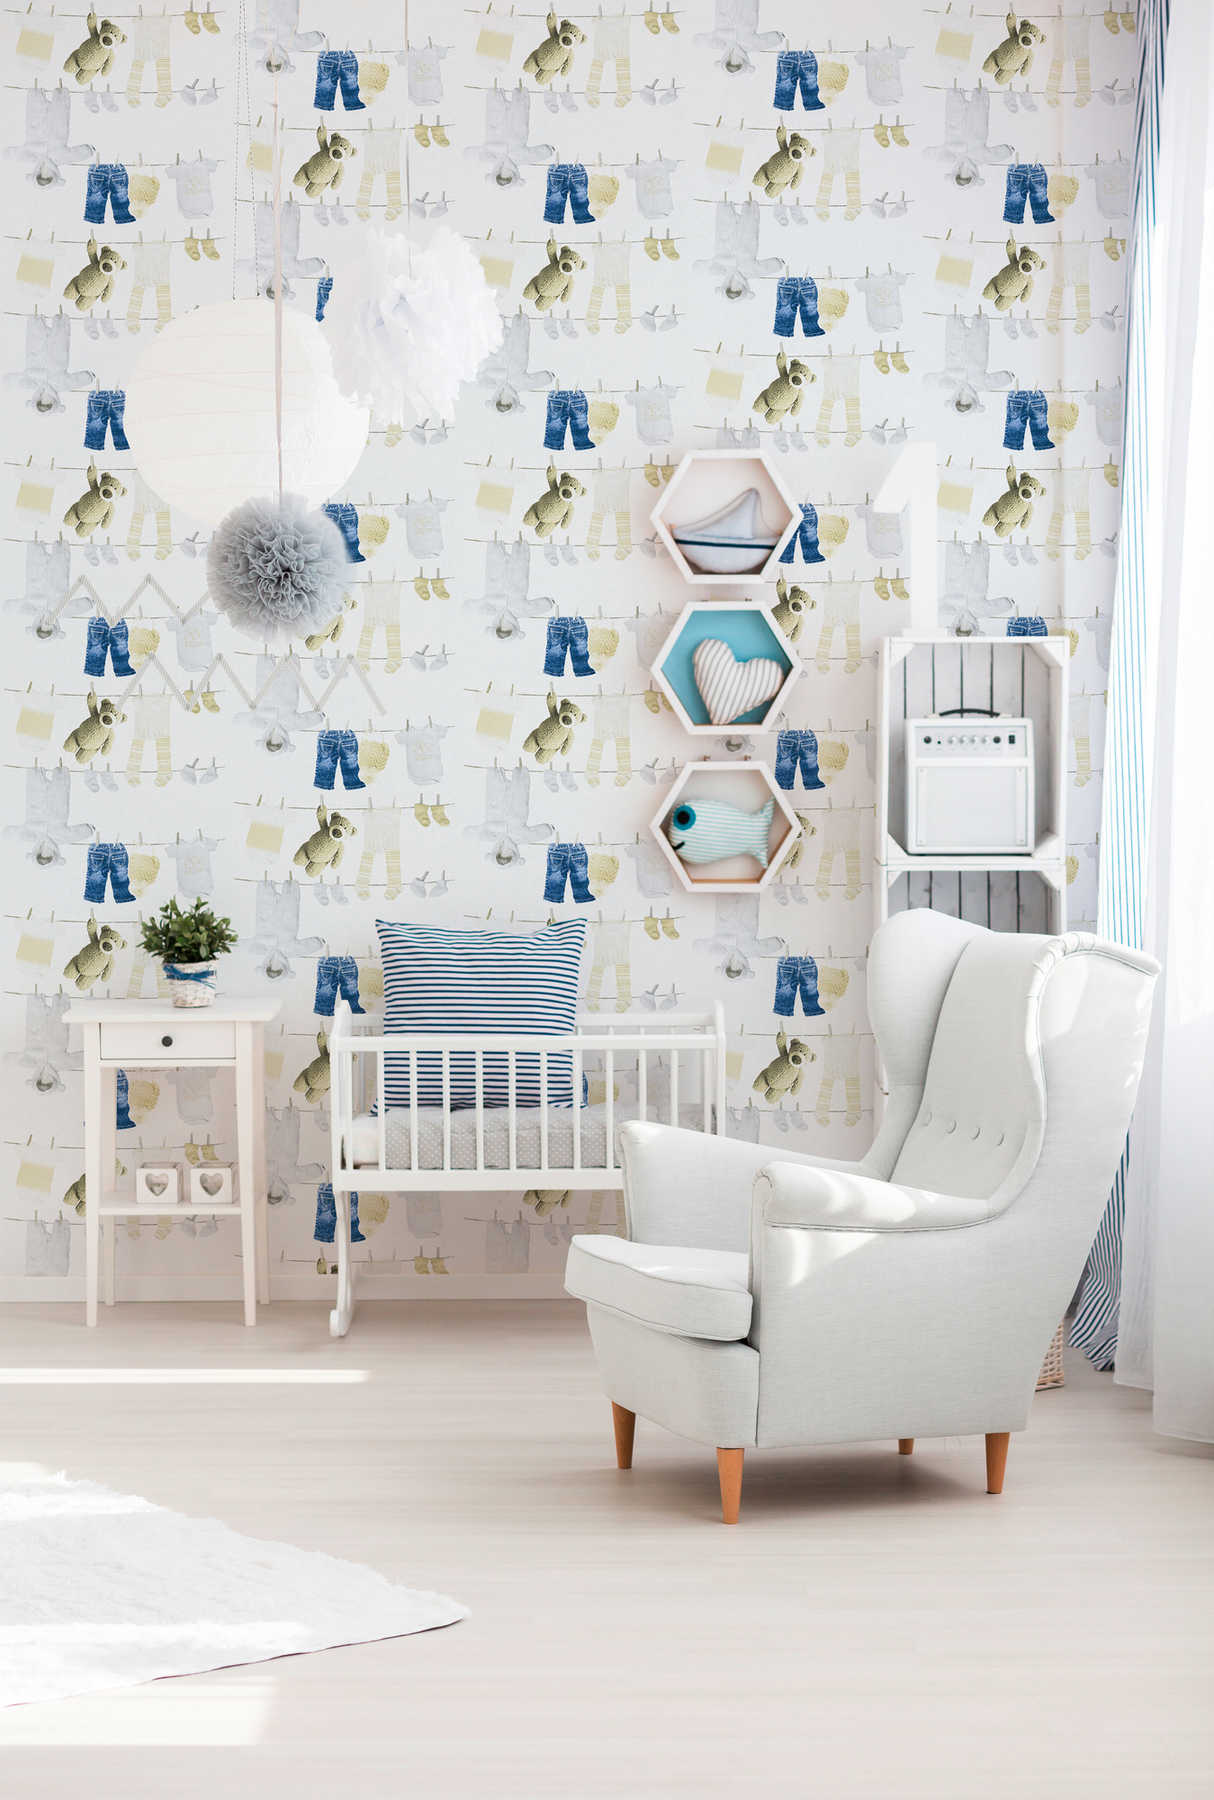             Papel pintado para la habitación del bebé con motivos infantiles - Blanco
        